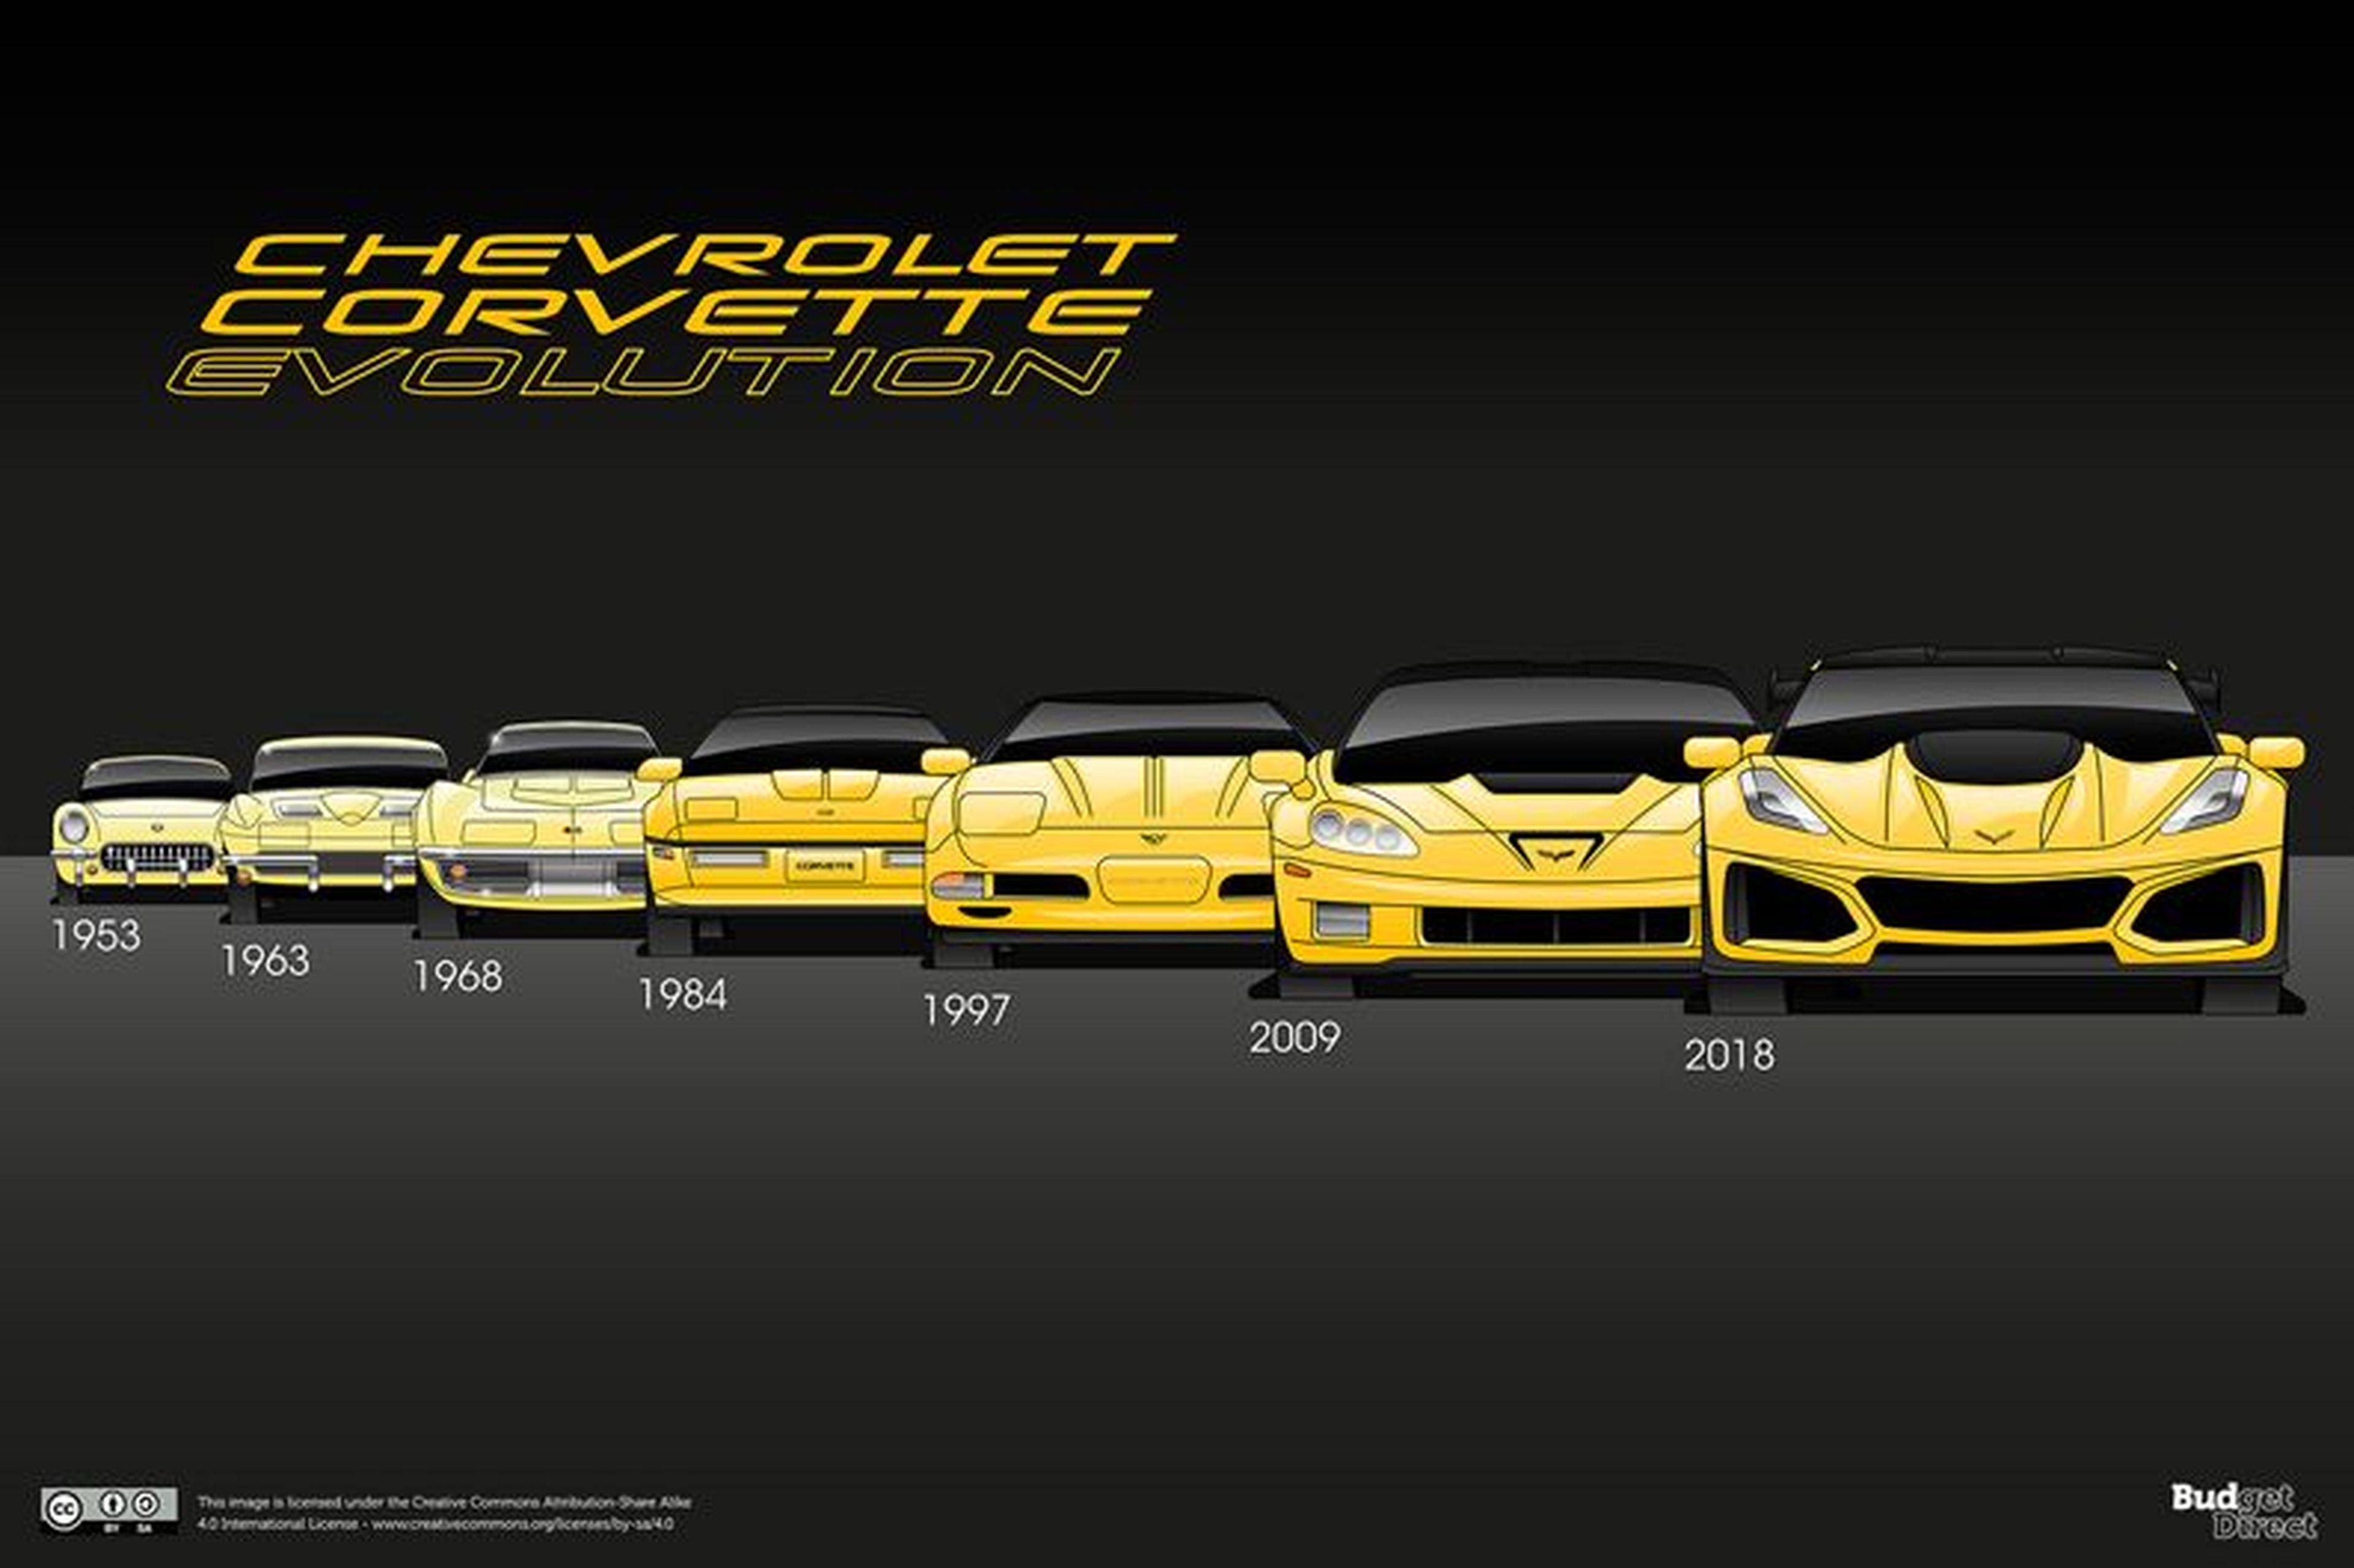 Diseño incombustible: Chevrolet Corvette